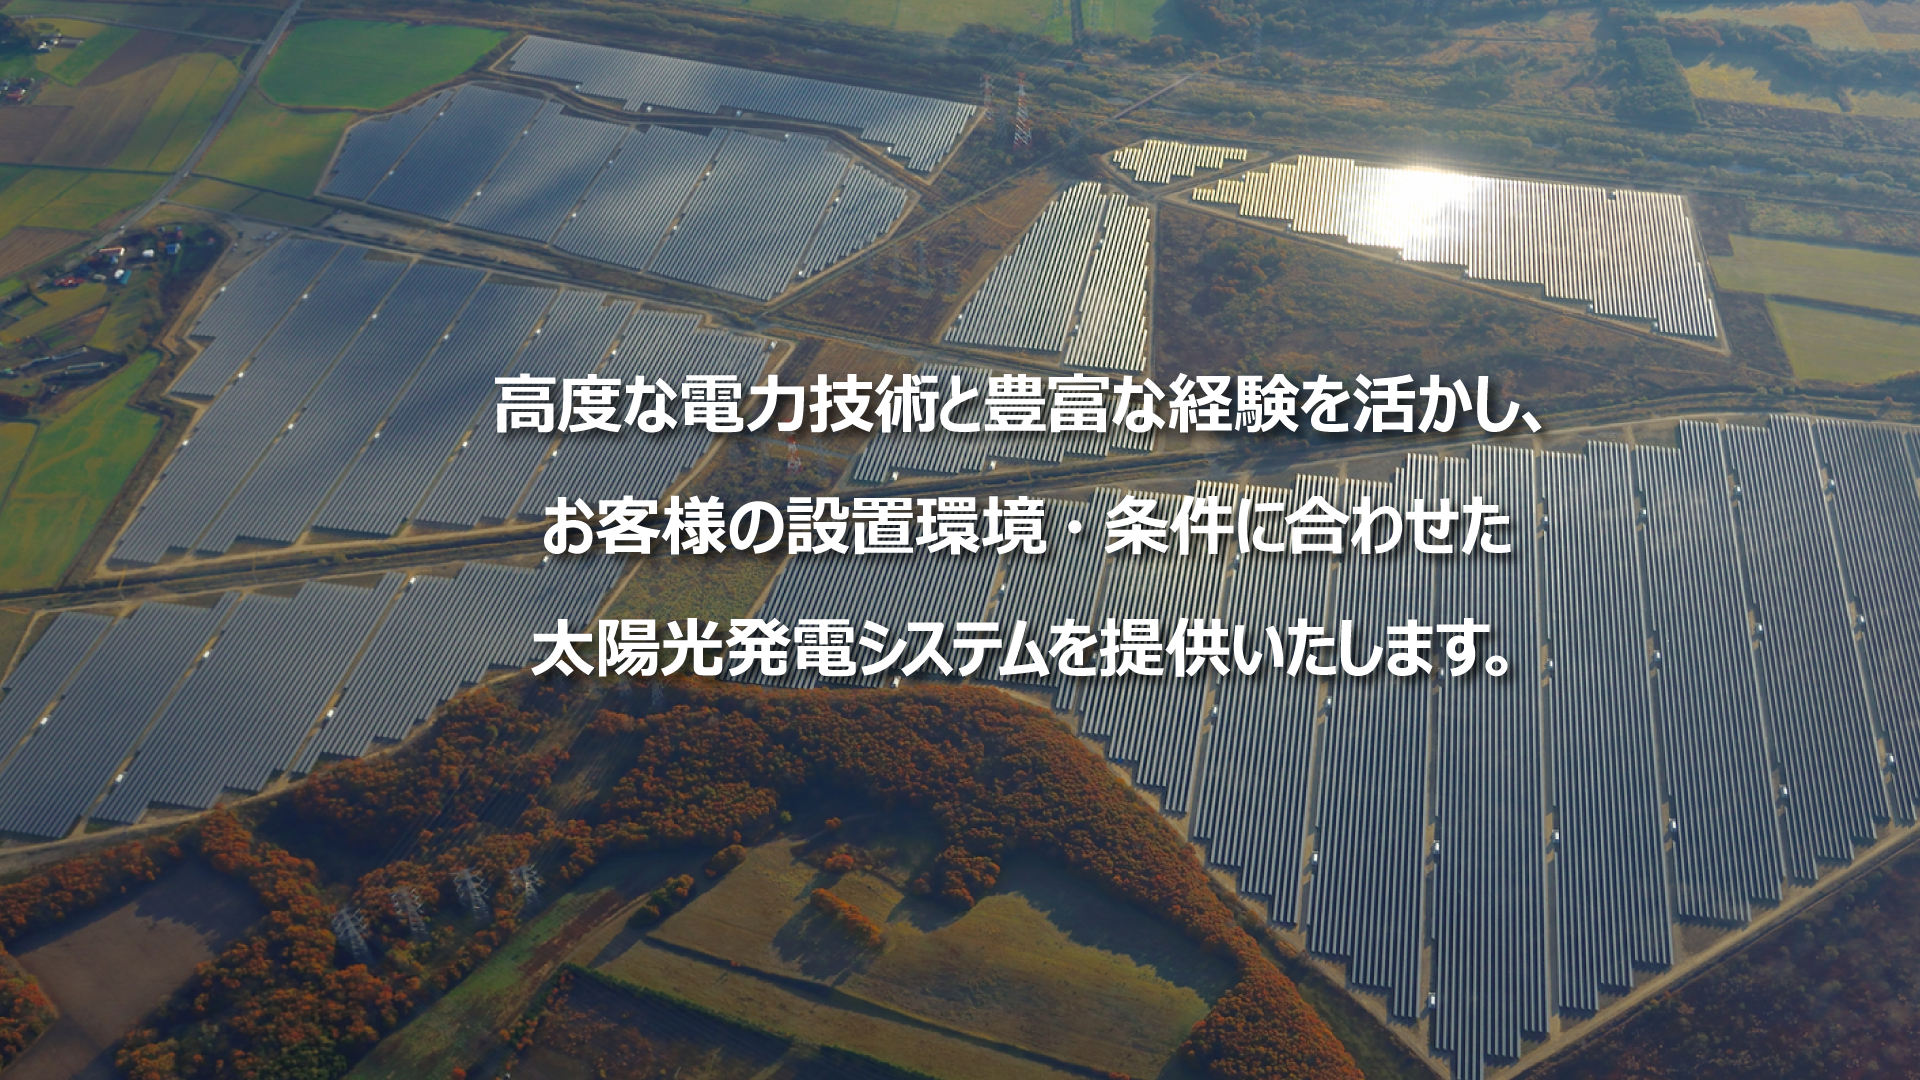 ここから始まる、豊かな未来。東芝の太陽光発電がお応えします。　